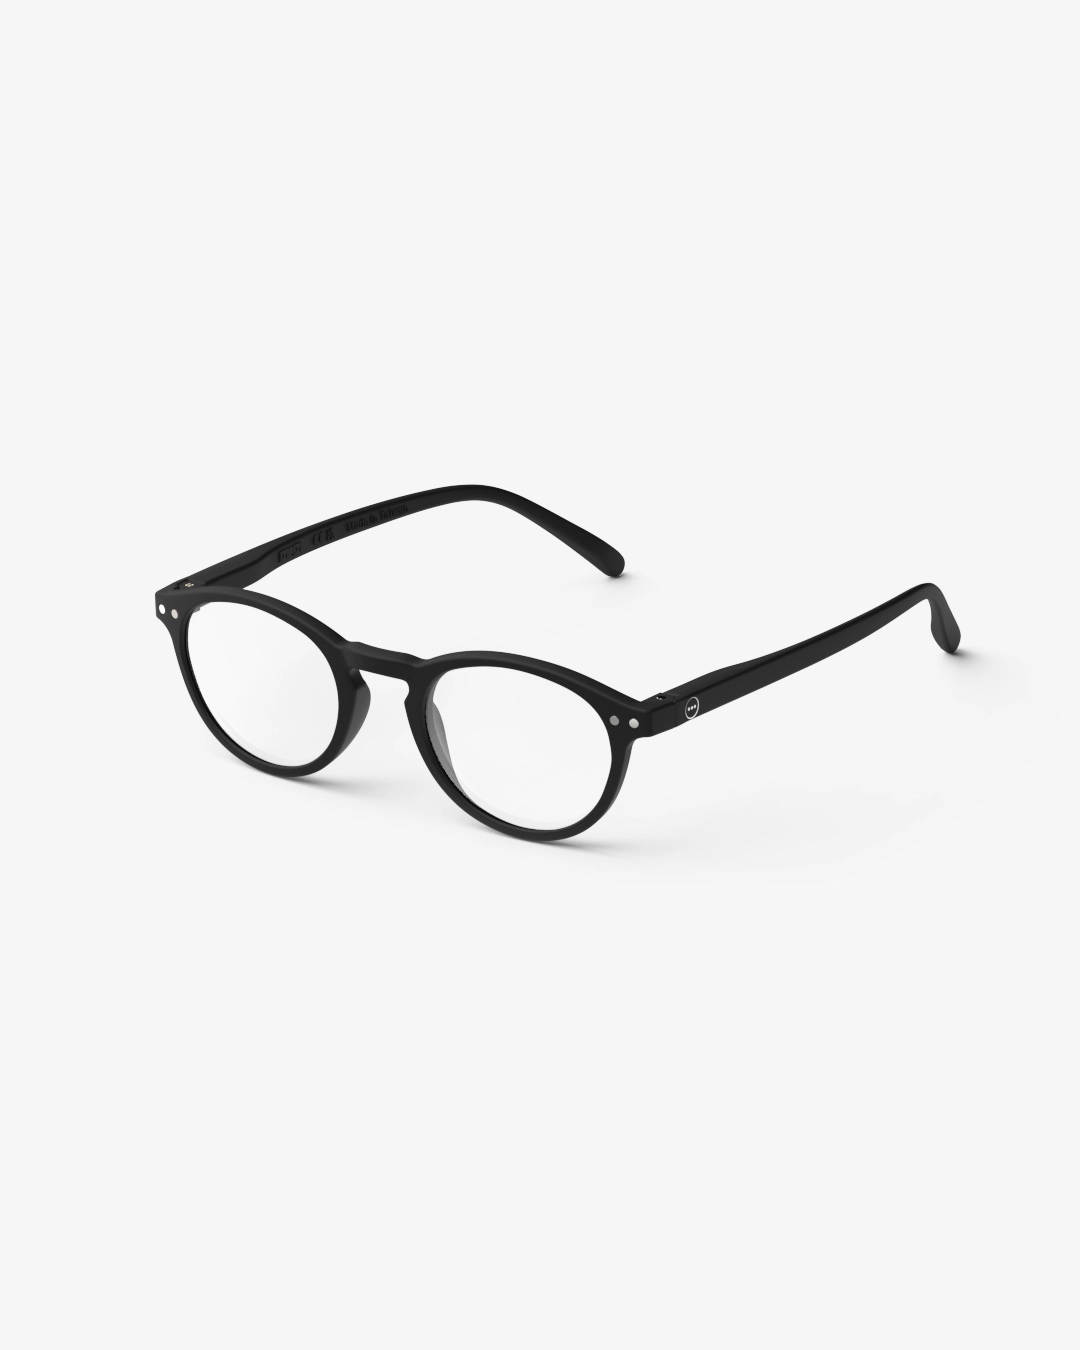 IZIPIZI #A Black Reading Glasses +2.0